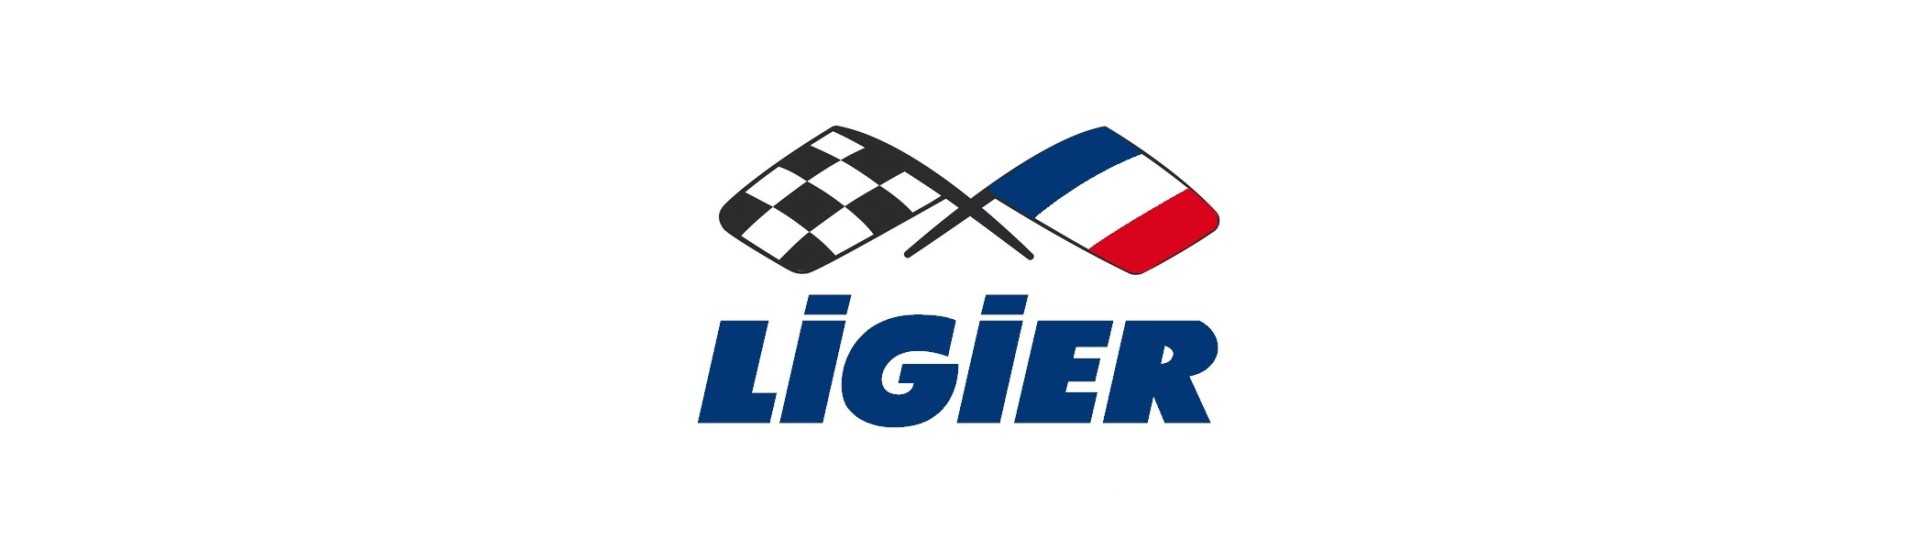 Mandíbula de freio ao melhor preço para o carro sem uma permissão Ligier